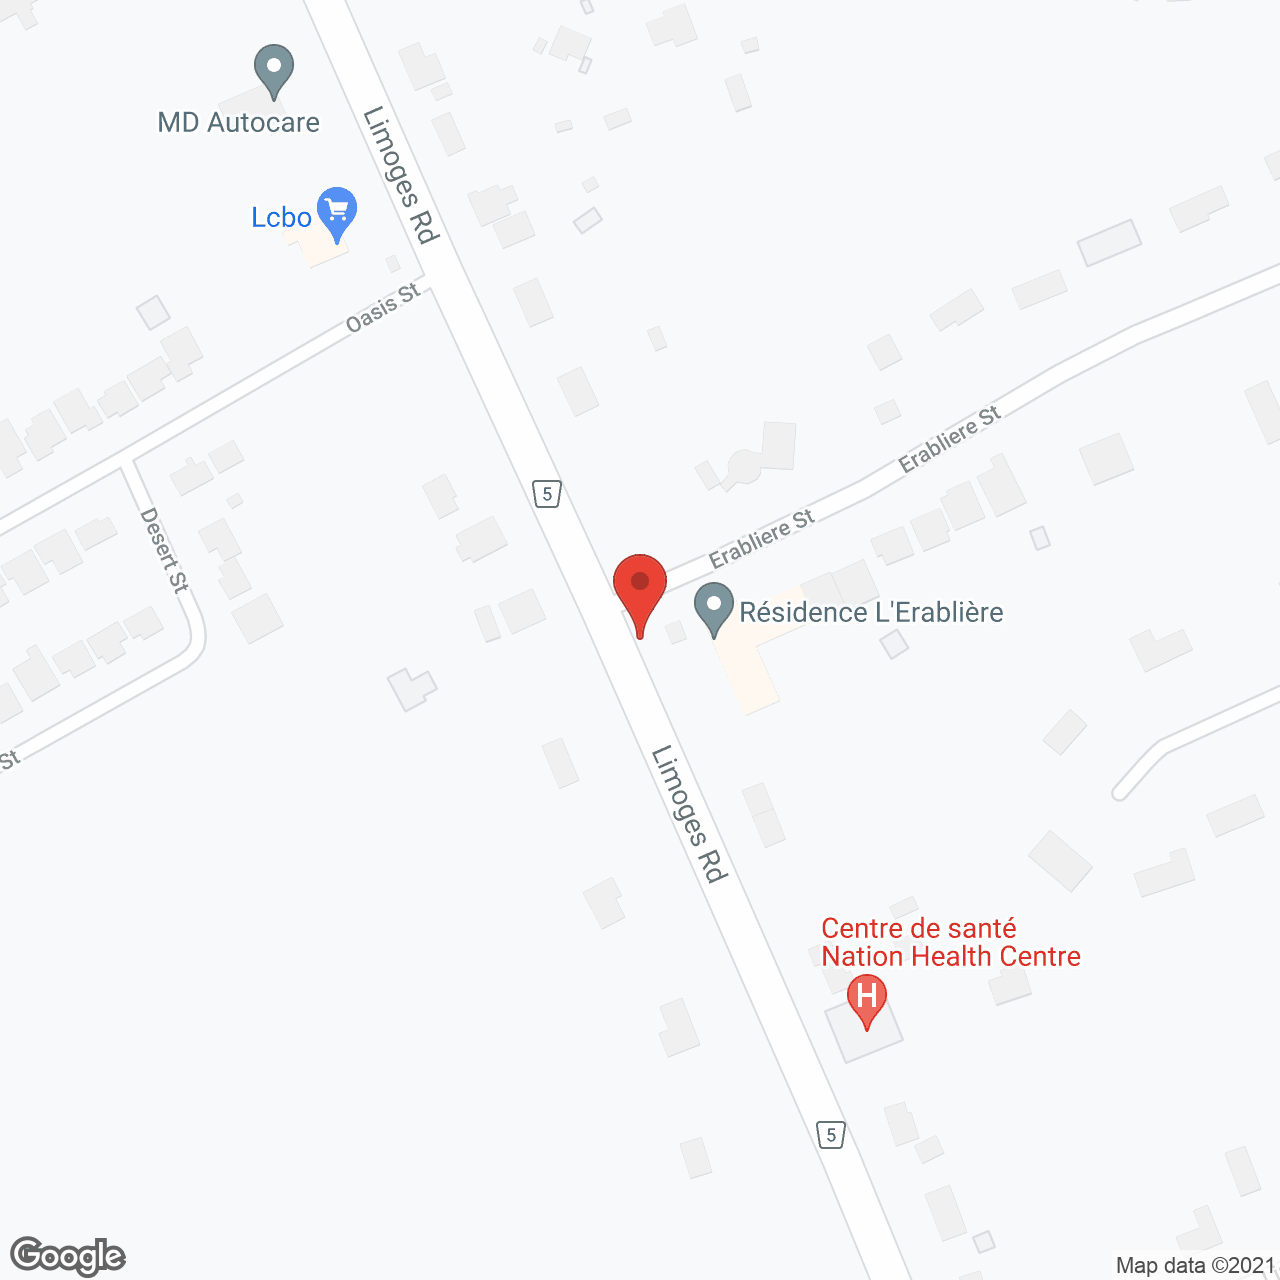 Residence L'erabliere in google map